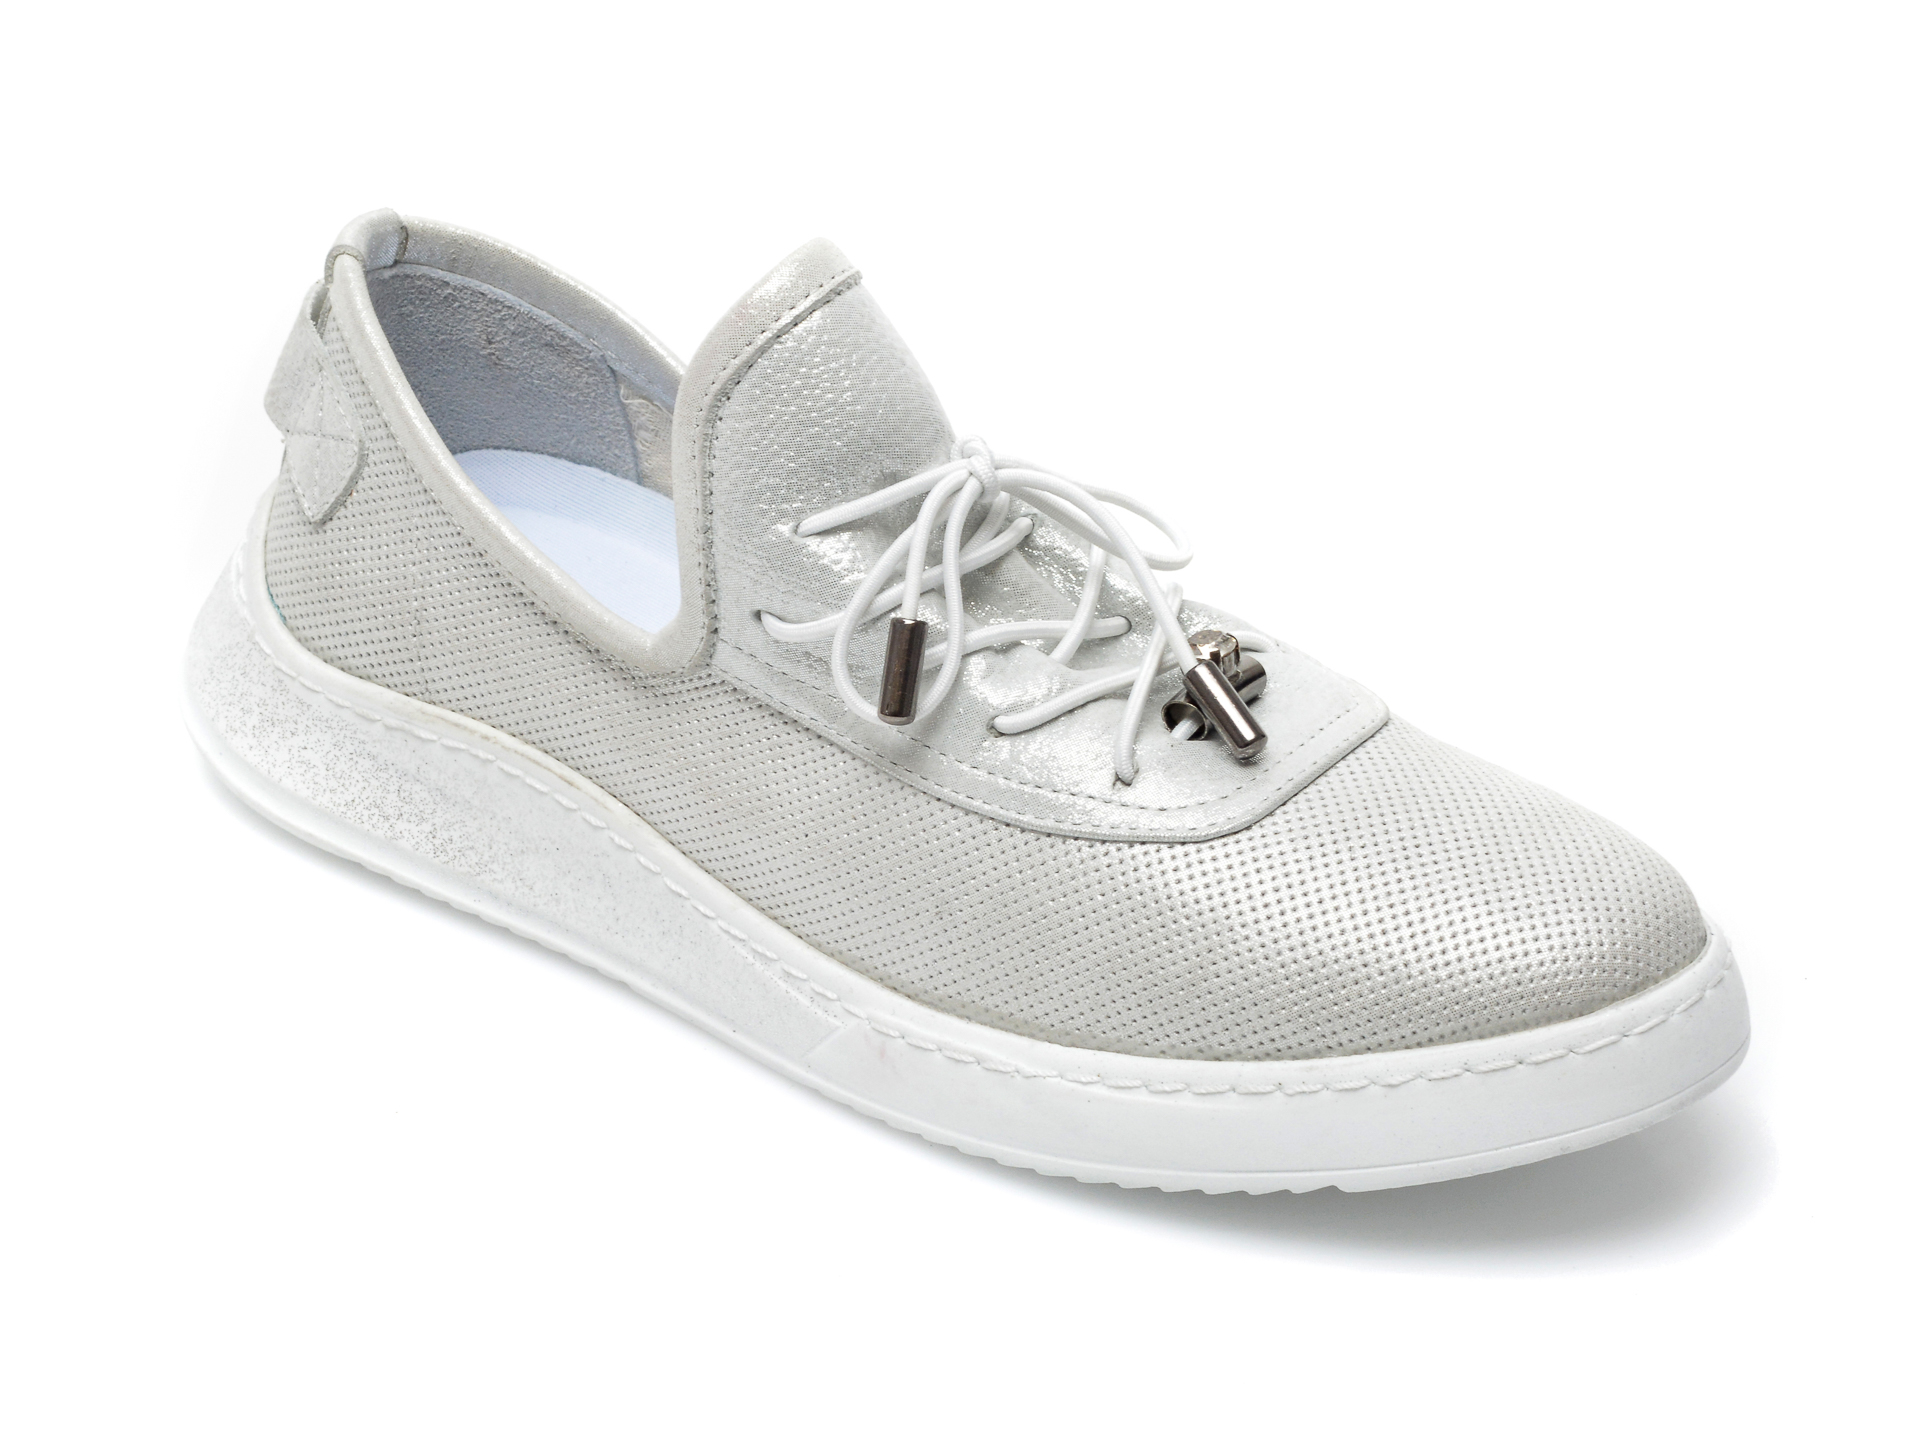 Pantofi BABOOS albi, 908, din piele naturala